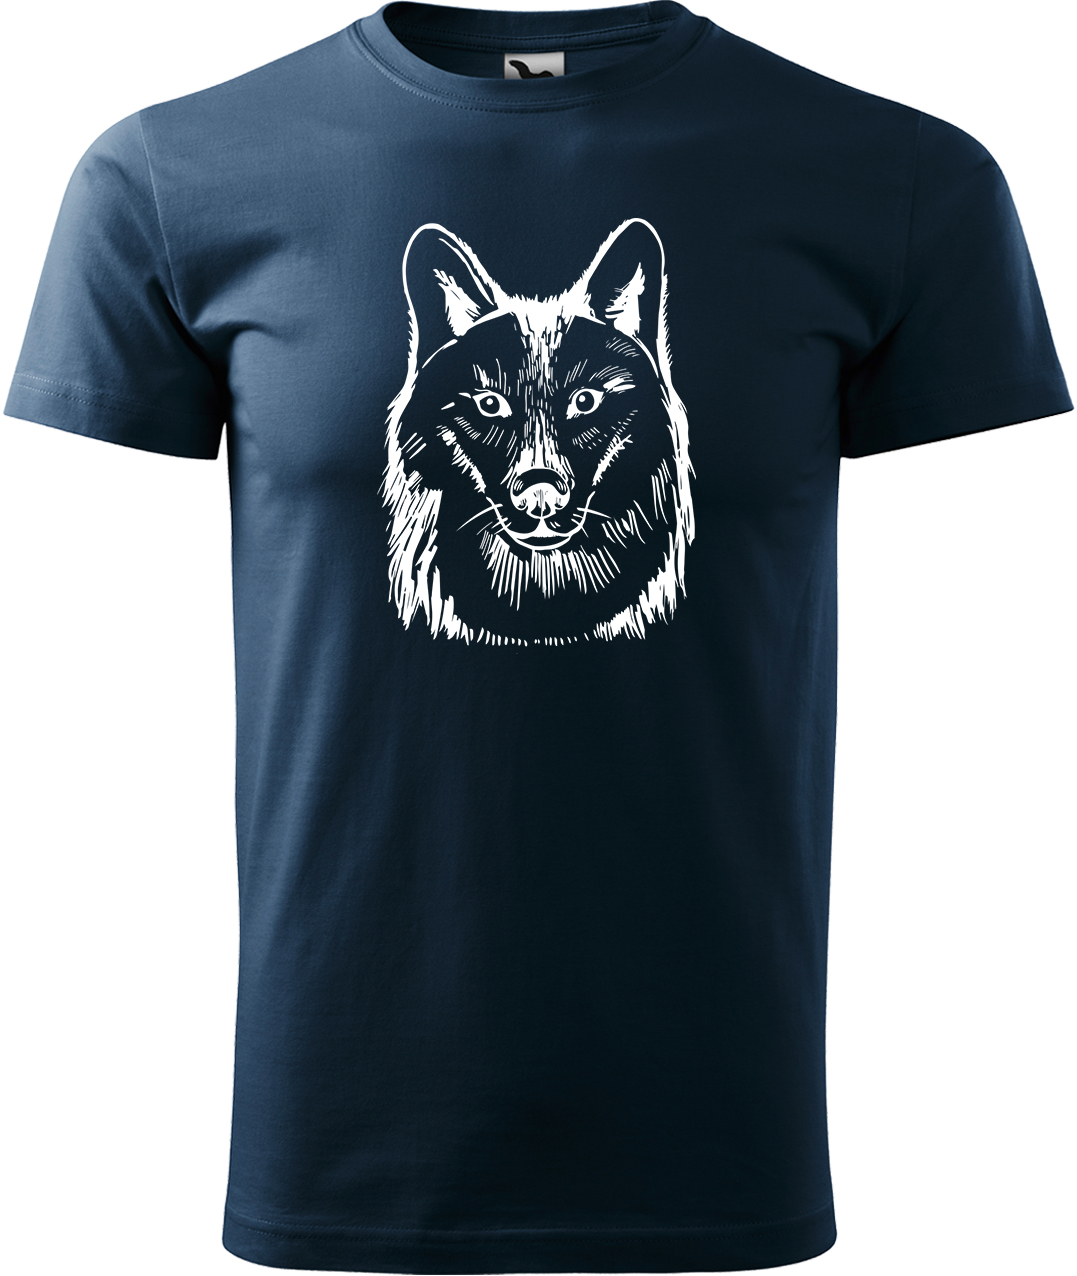 Pánské tričko s vlkem - Kresba vlka Velikost: 4XL, Barva: Námořní modrá (02), Střih: pánský